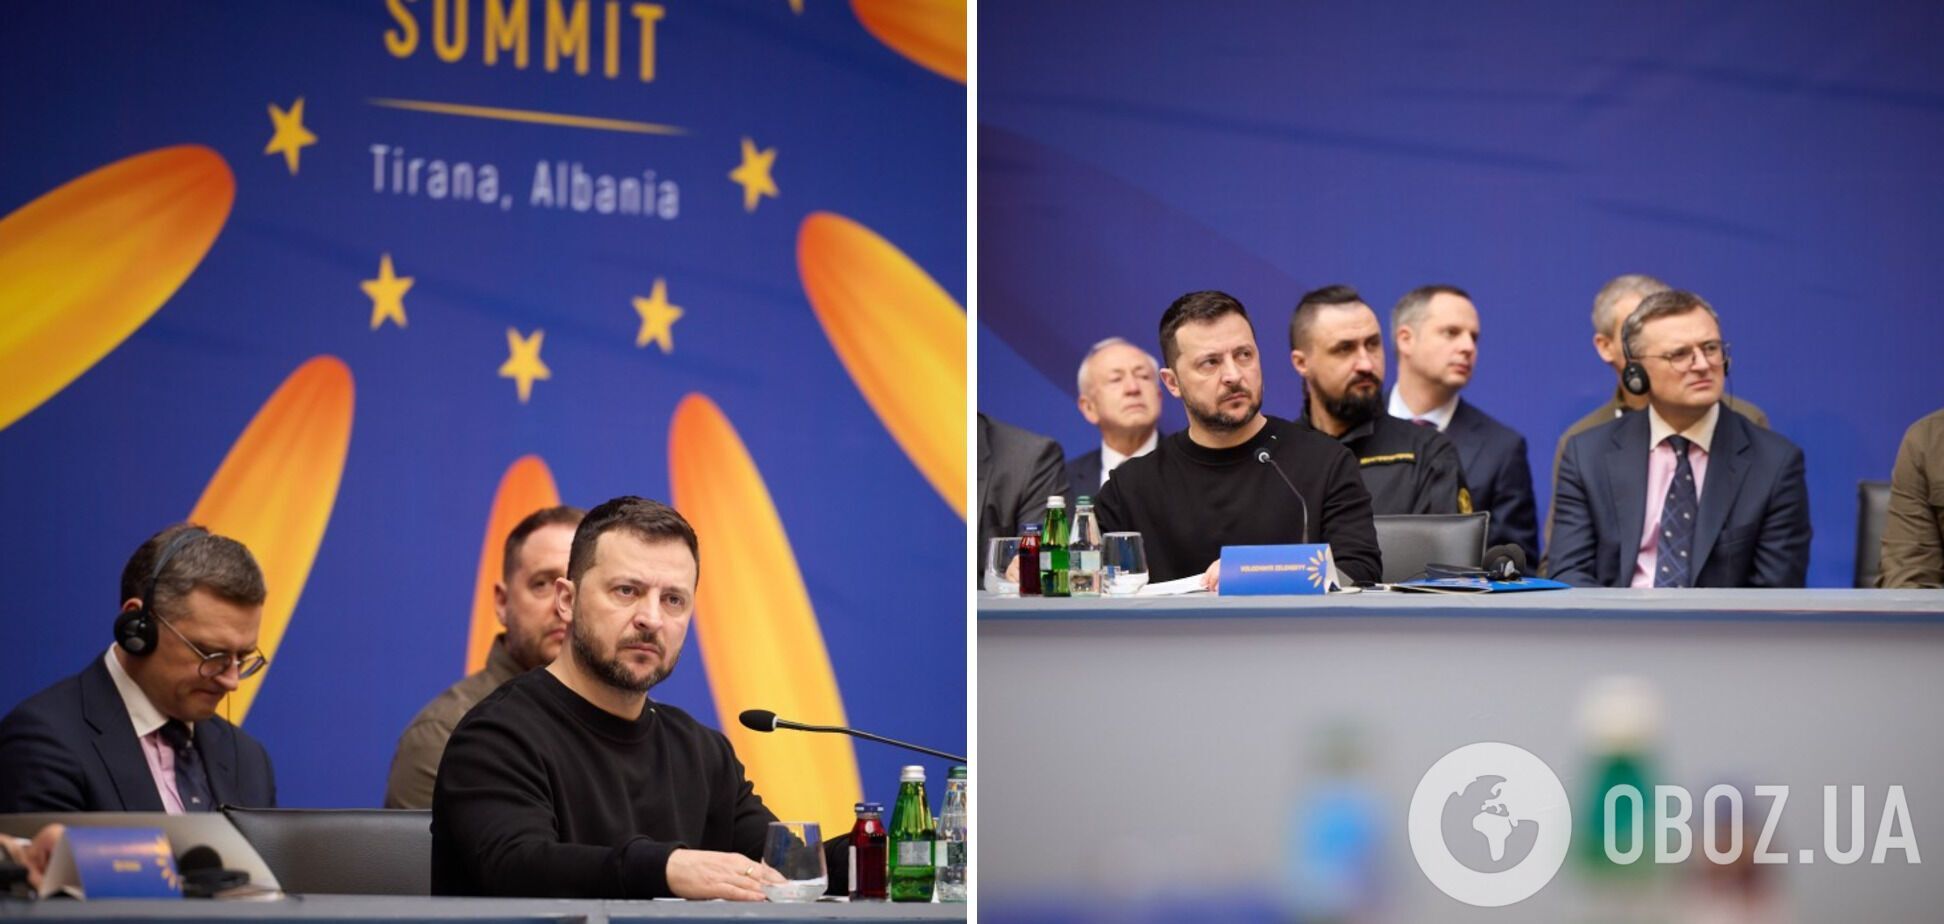 'Сейчас время, когда определяется путь Европы': Зеленский выступил на открытии саммита в Тиране. Видео